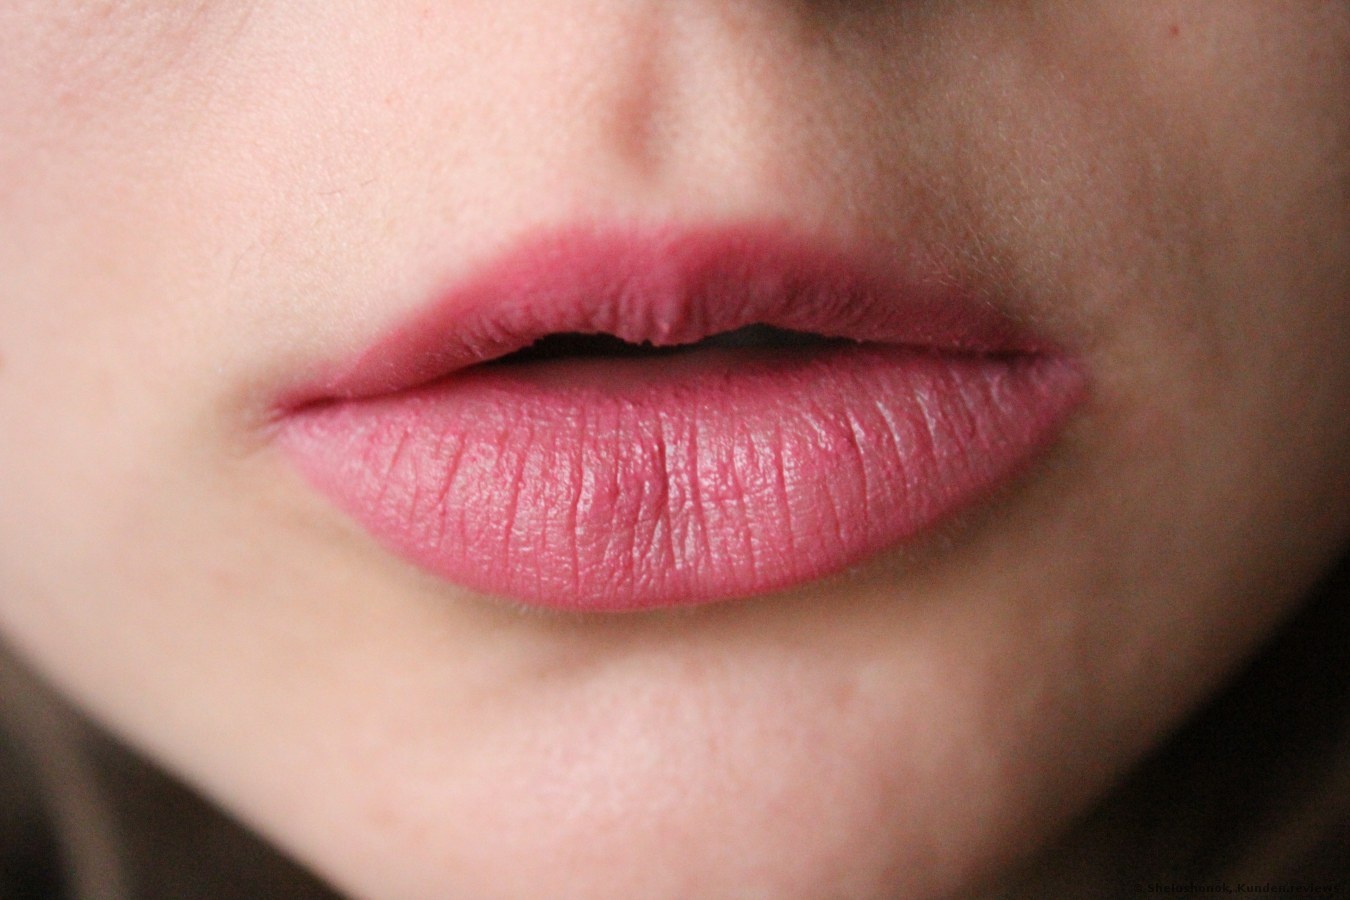 Instant Lipstick Mattifier von Catrice